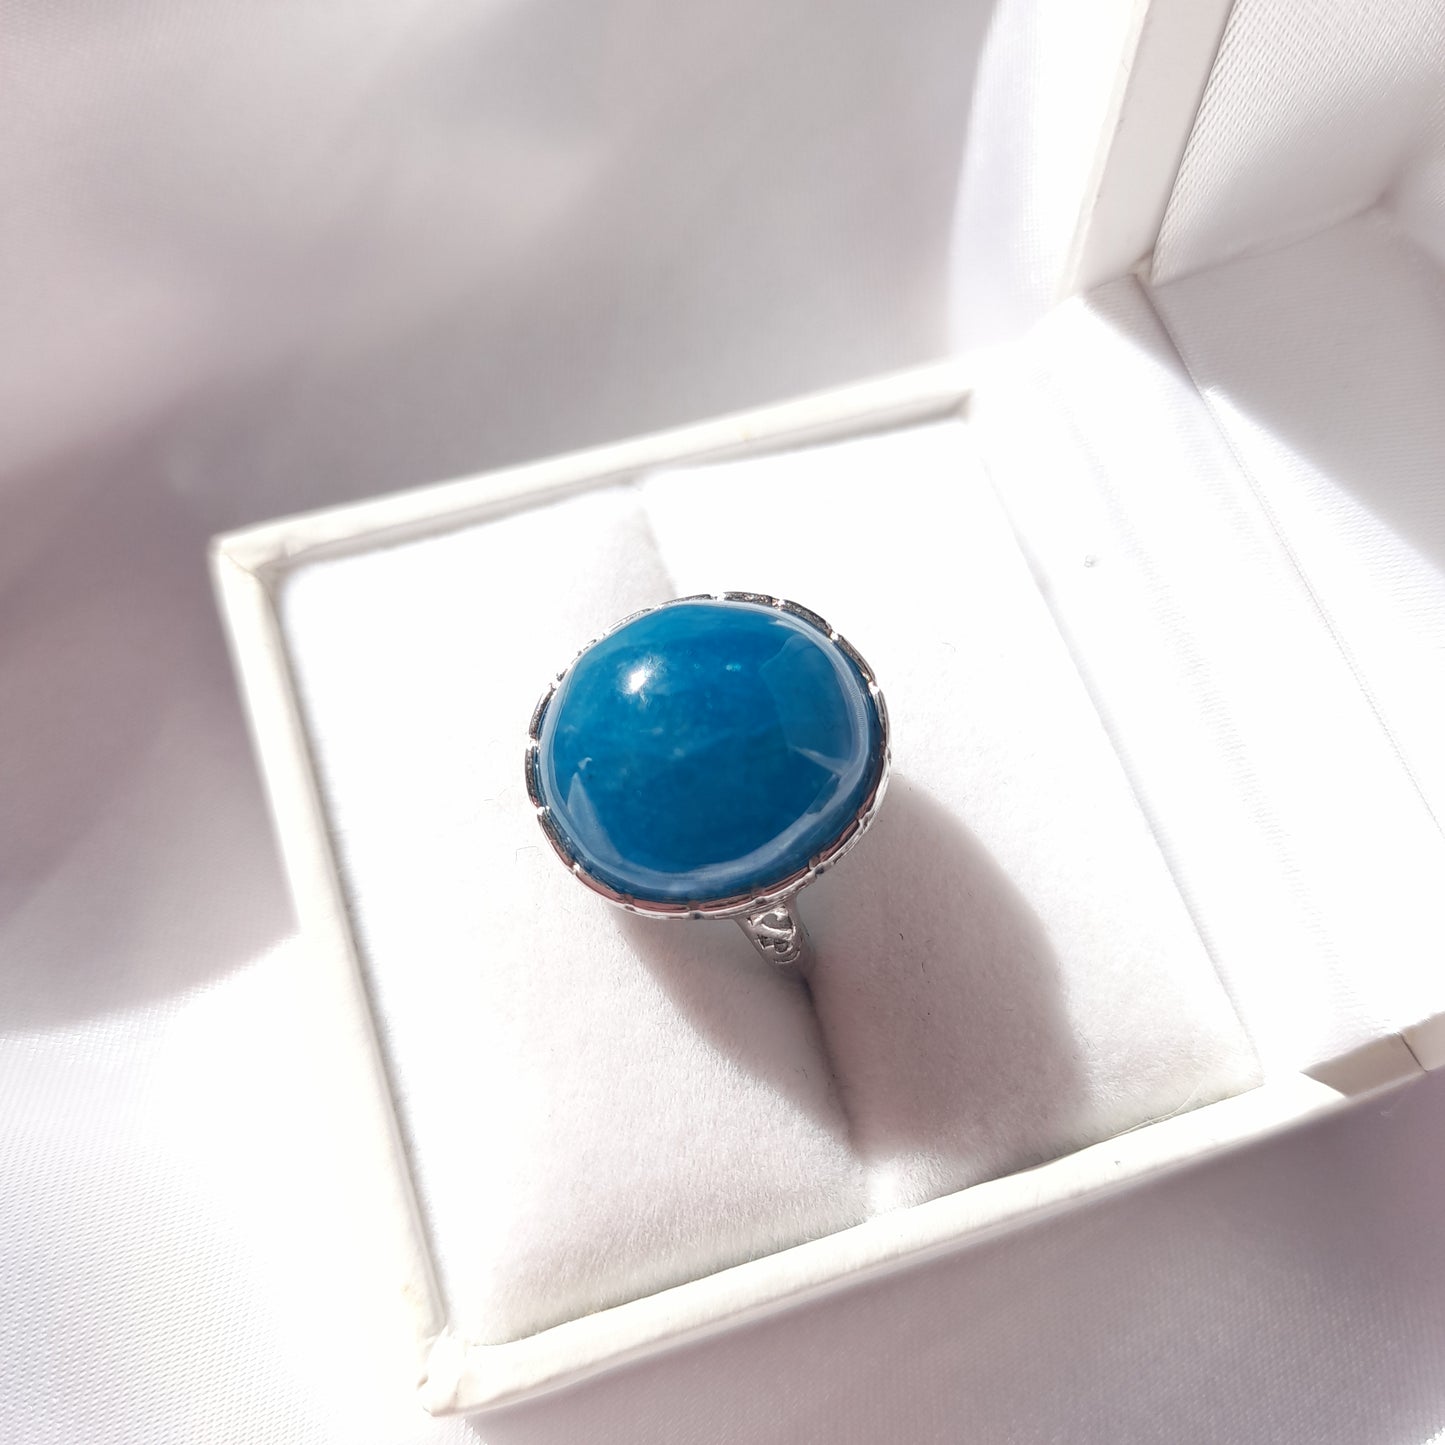 Gem Grade Blue Apatite Crystal Rings - openmindedjourney